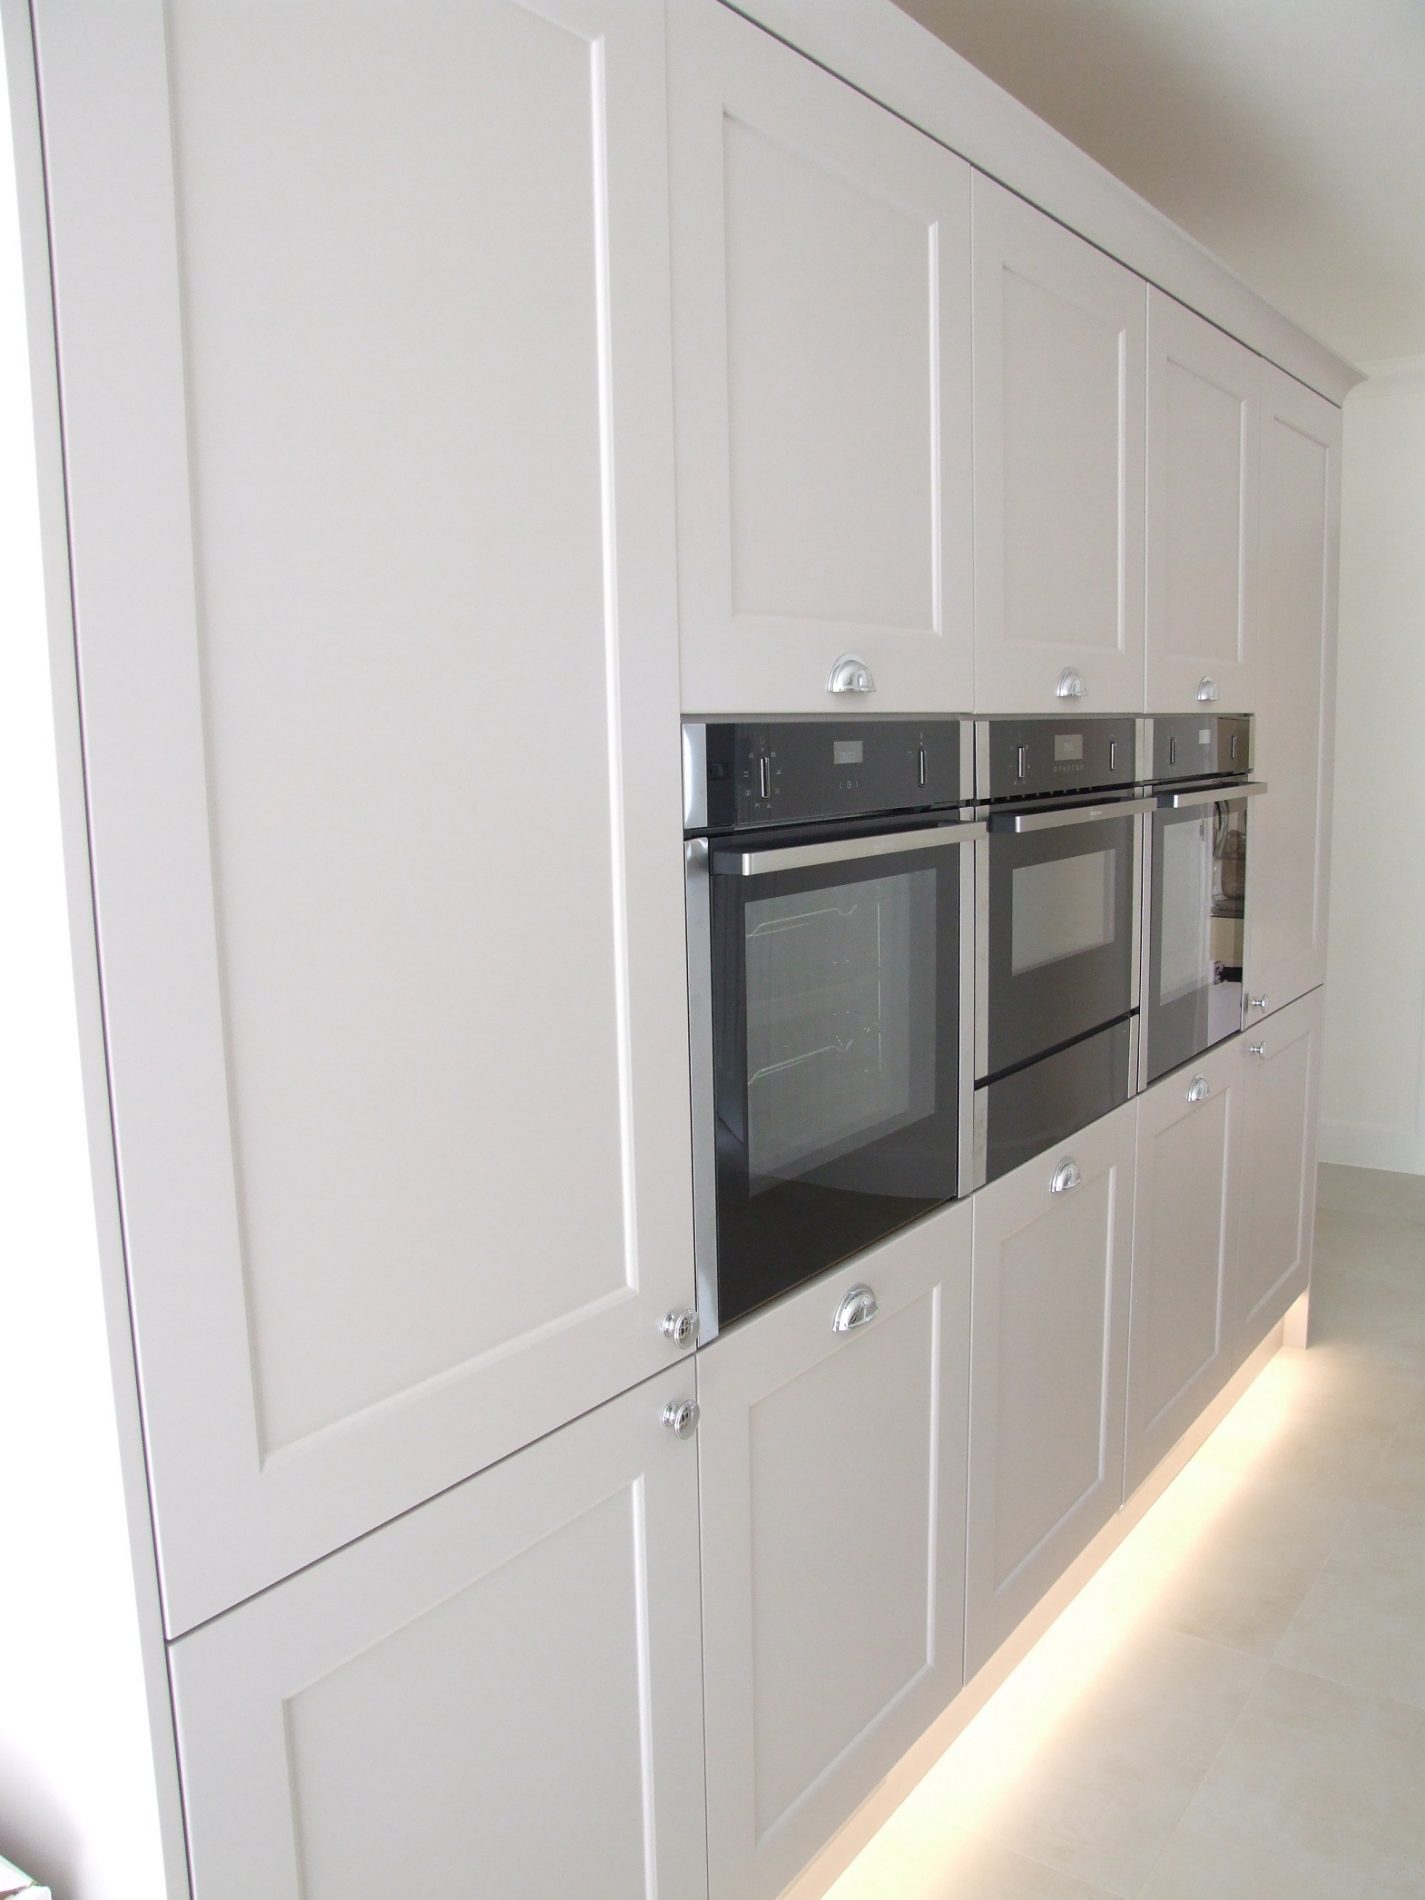 Neff ovens - Hallmark Kitchen Designs